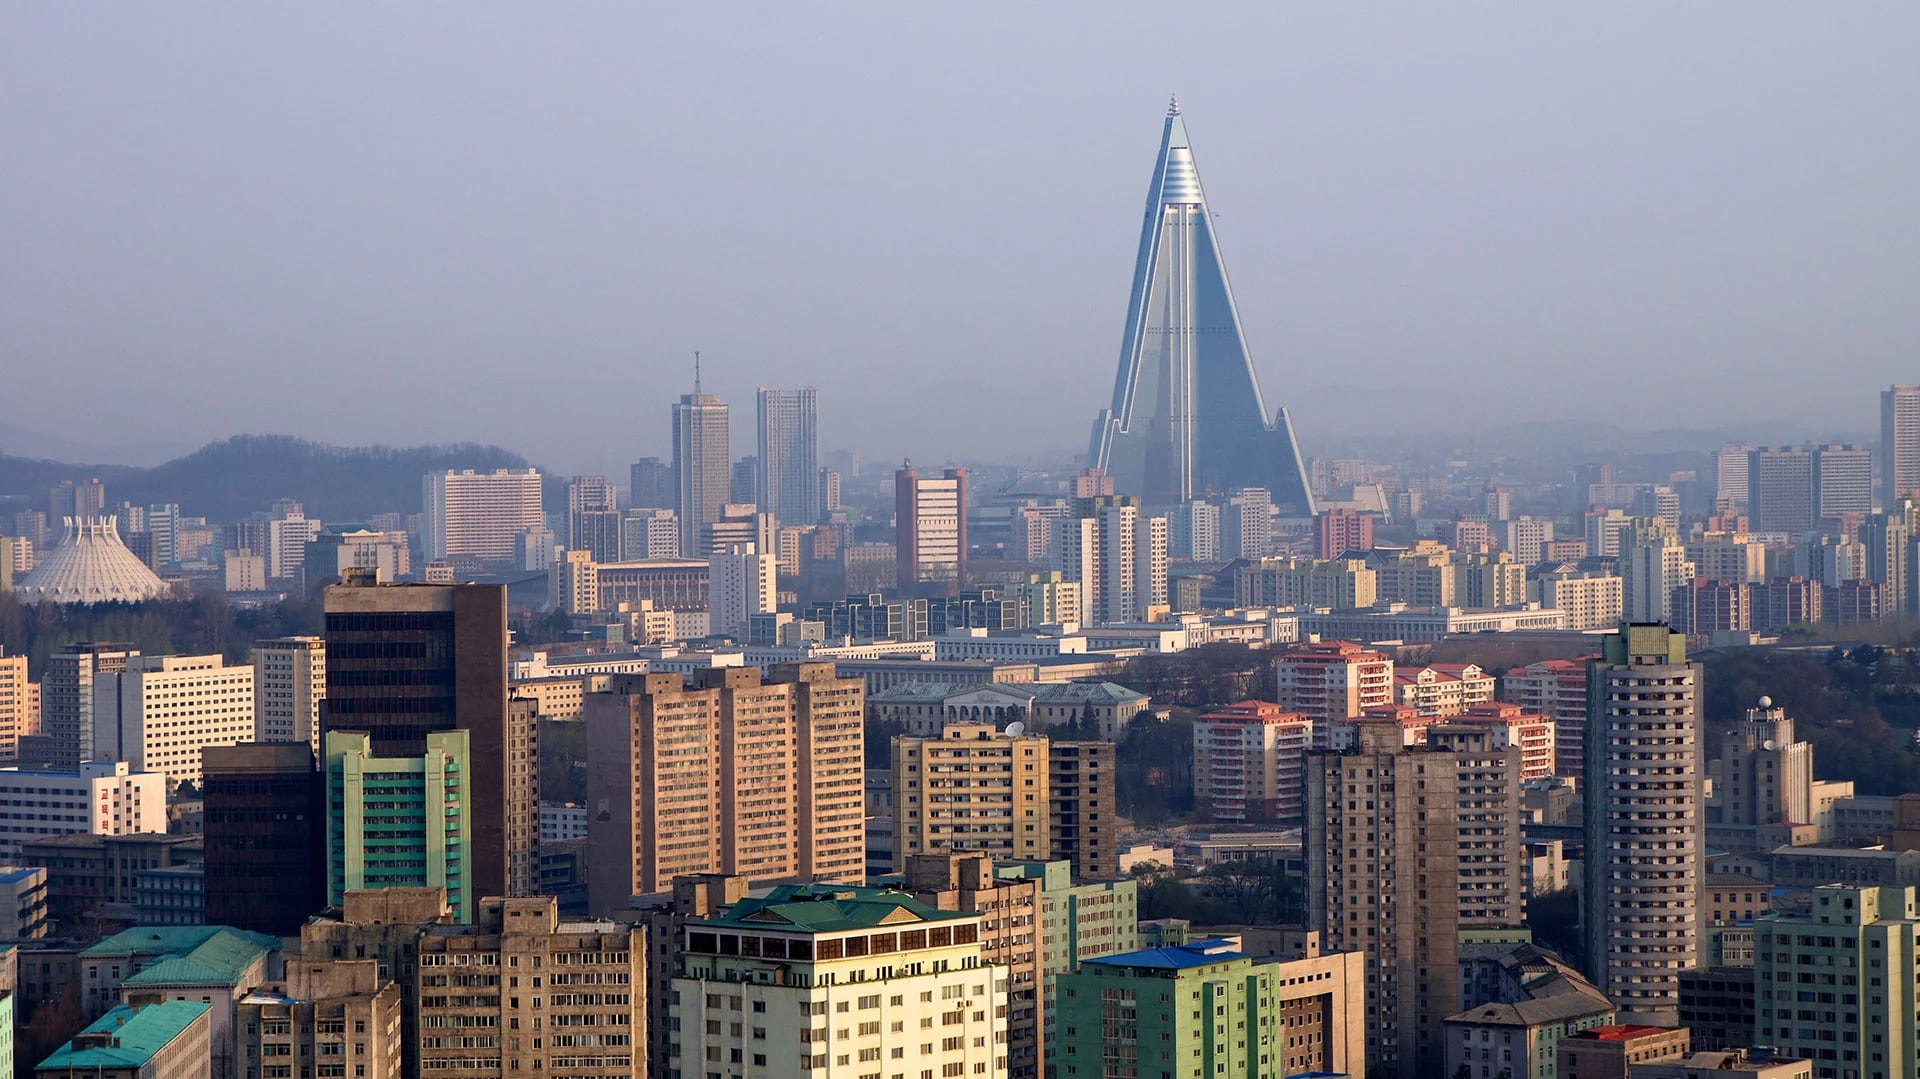 El Hotel Ryugyong, la estructura más alta de Corea del Norte, comenzó a construirse en 1987 y finalizó en 2011